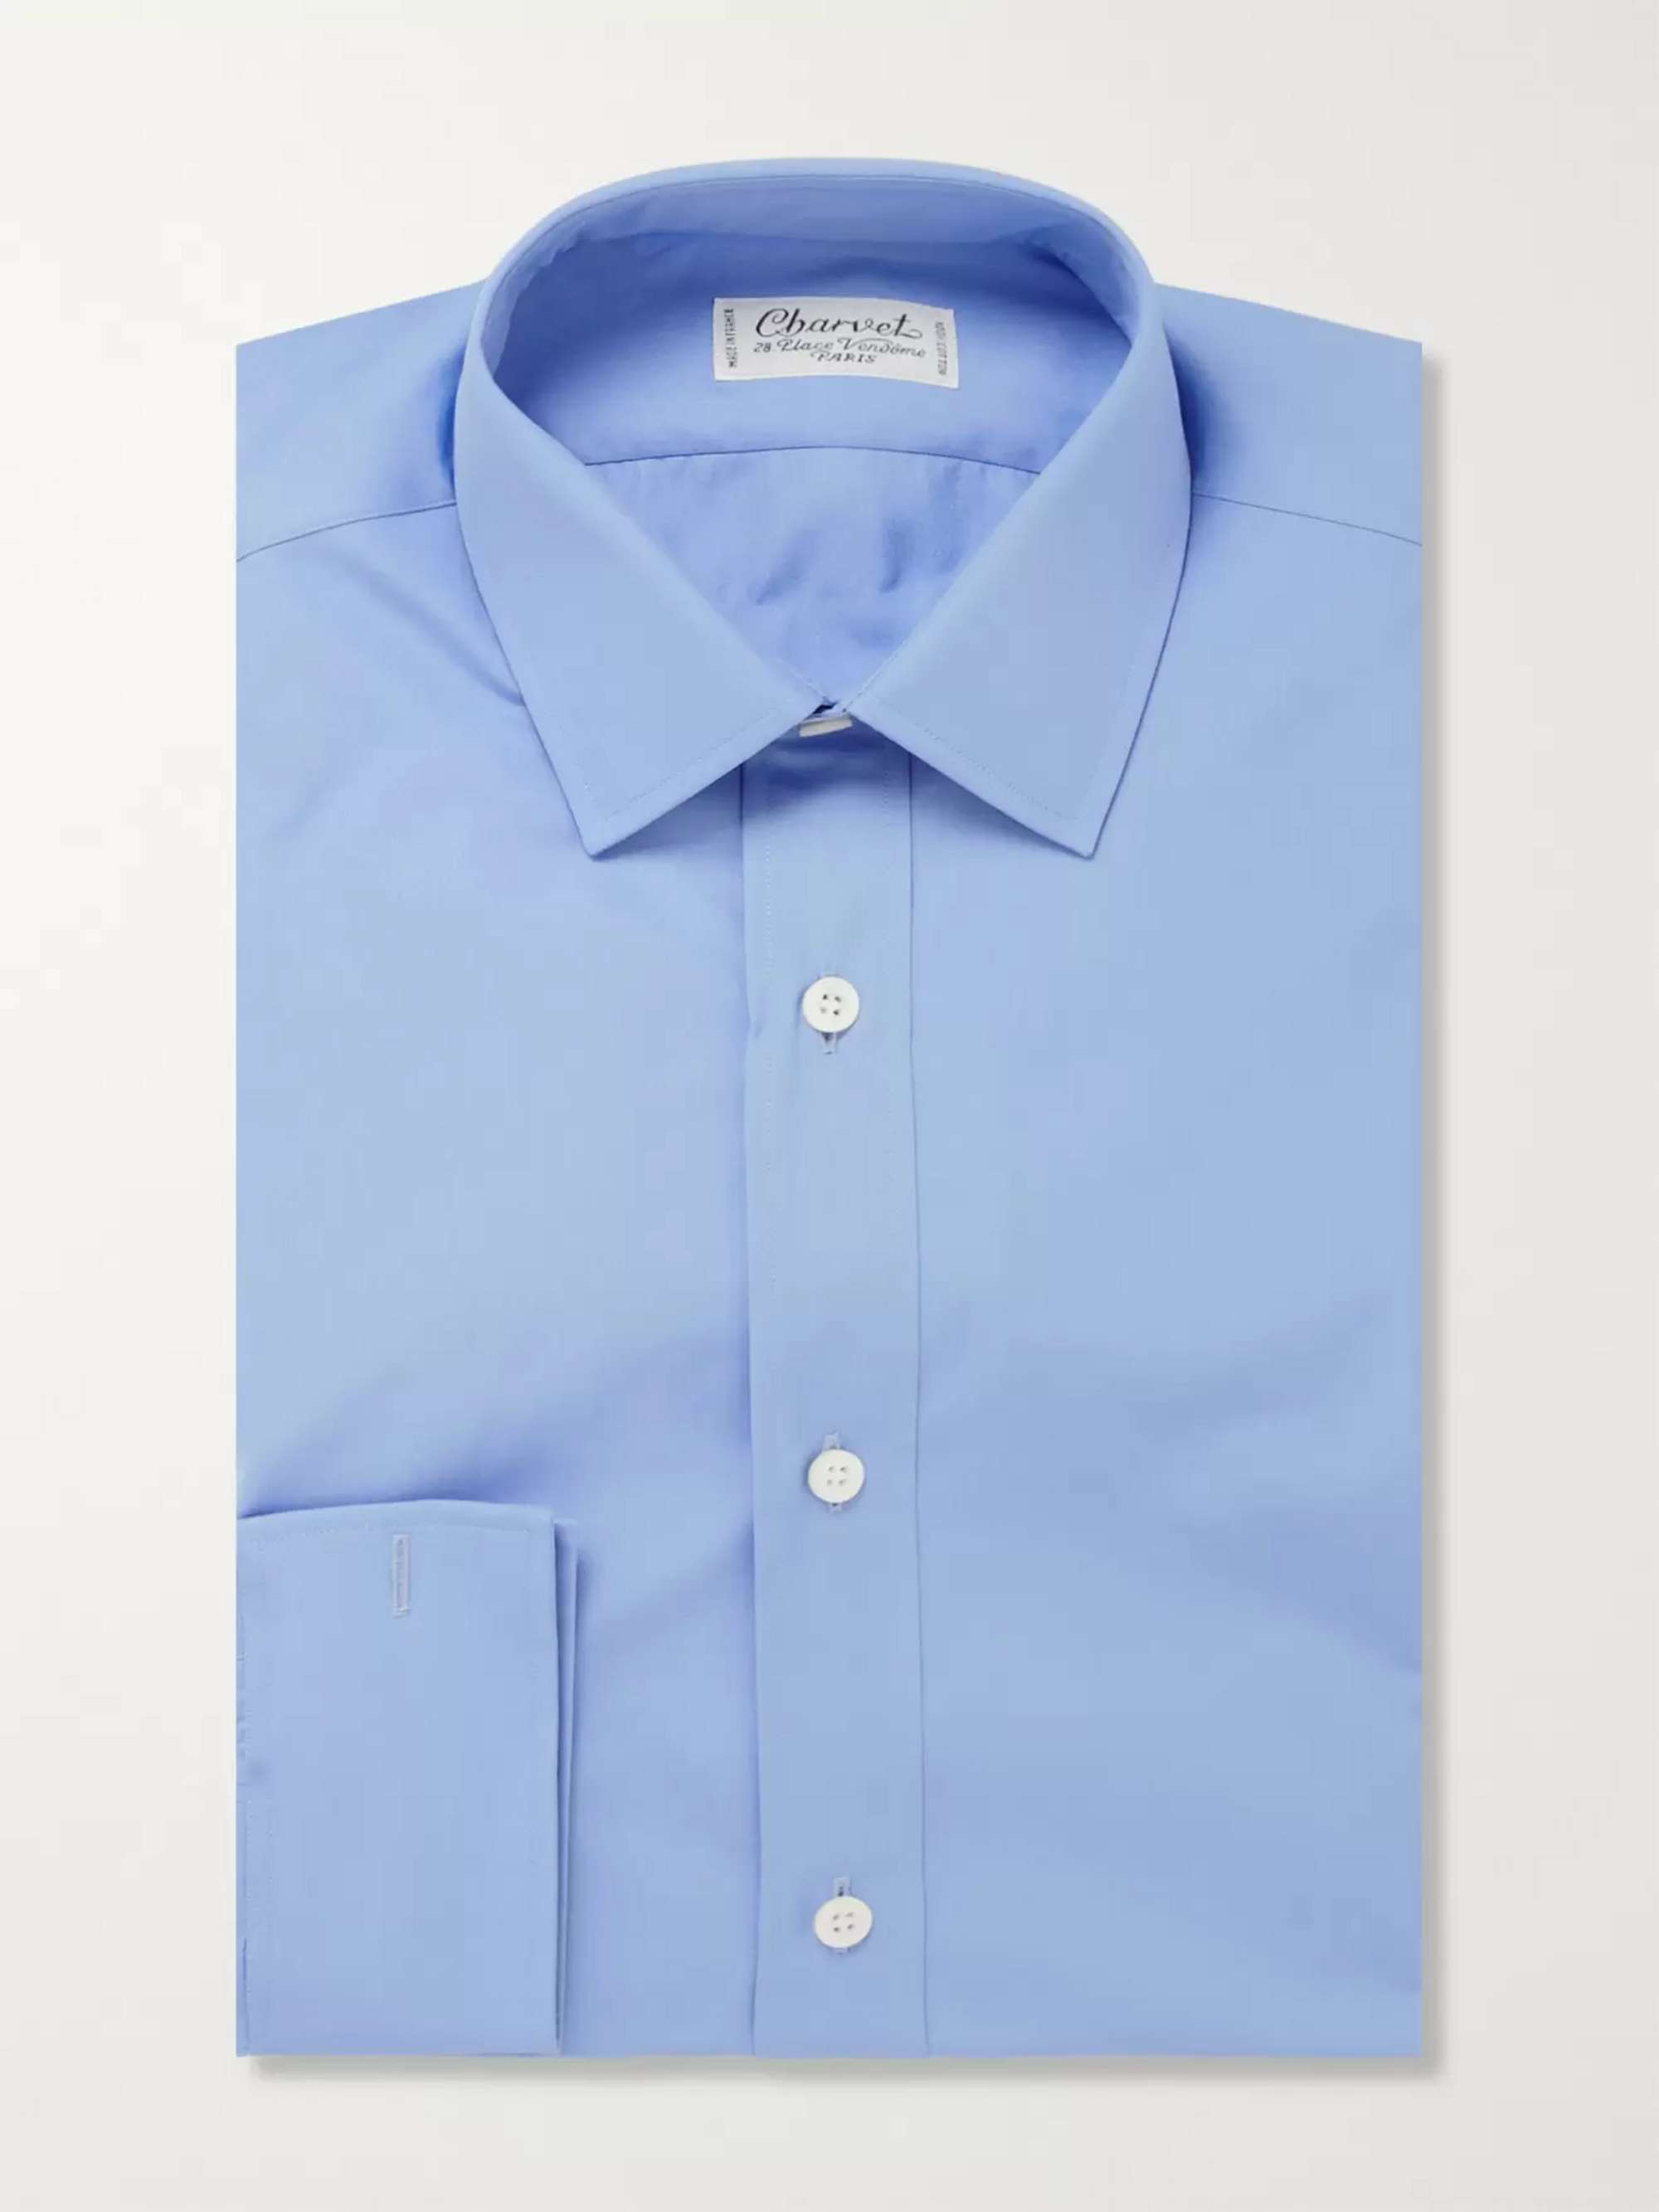 当店在庫だから安心 Made in France Charvet Shirt Blue ① シャツ